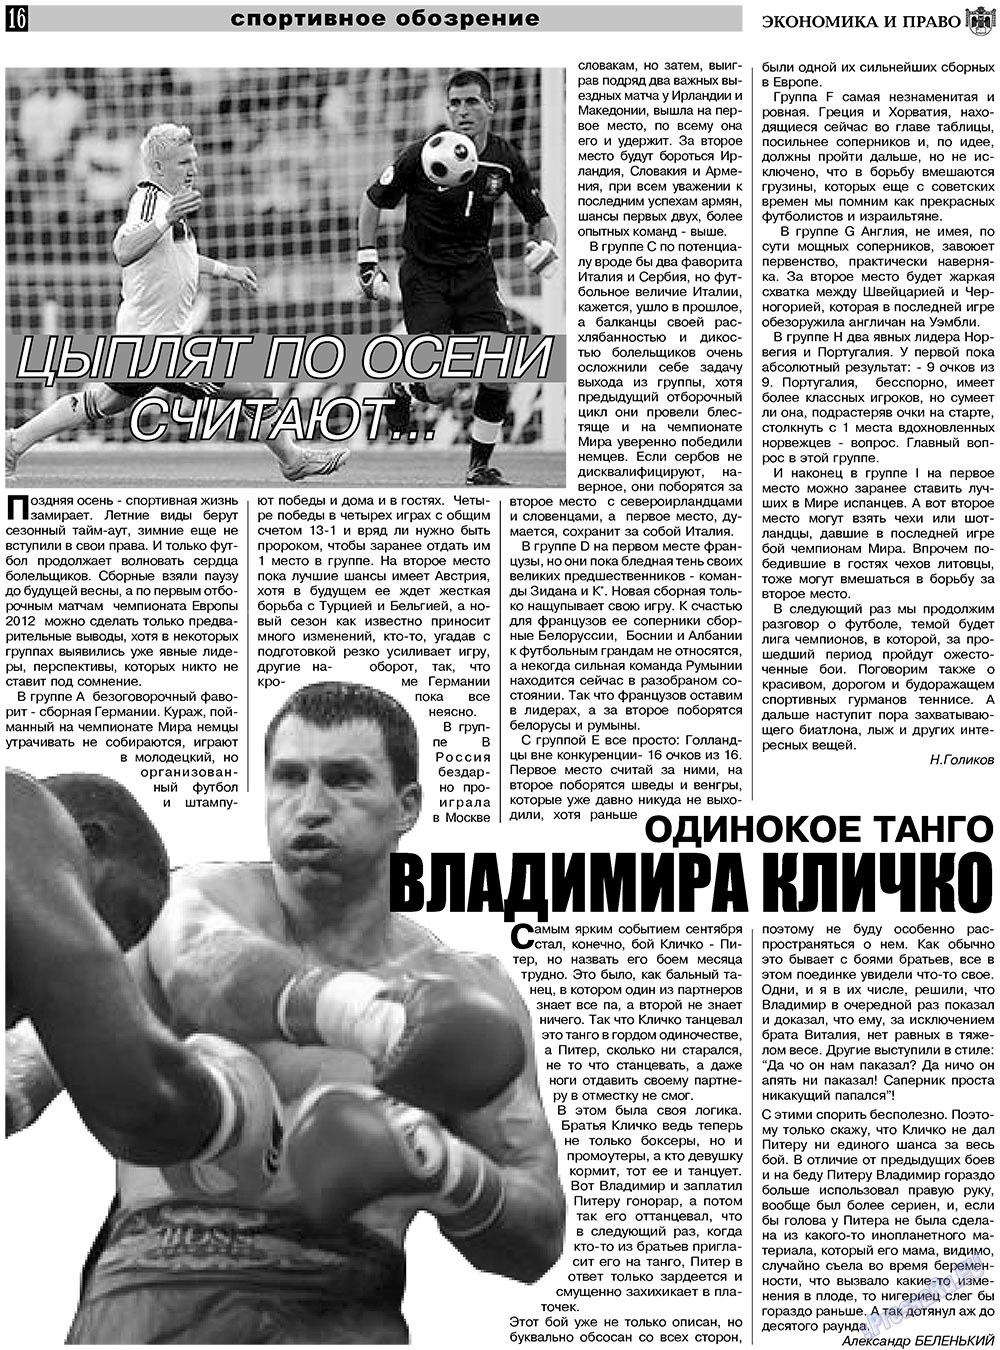 Экономика и право, газета. 2010 №11 стр.16